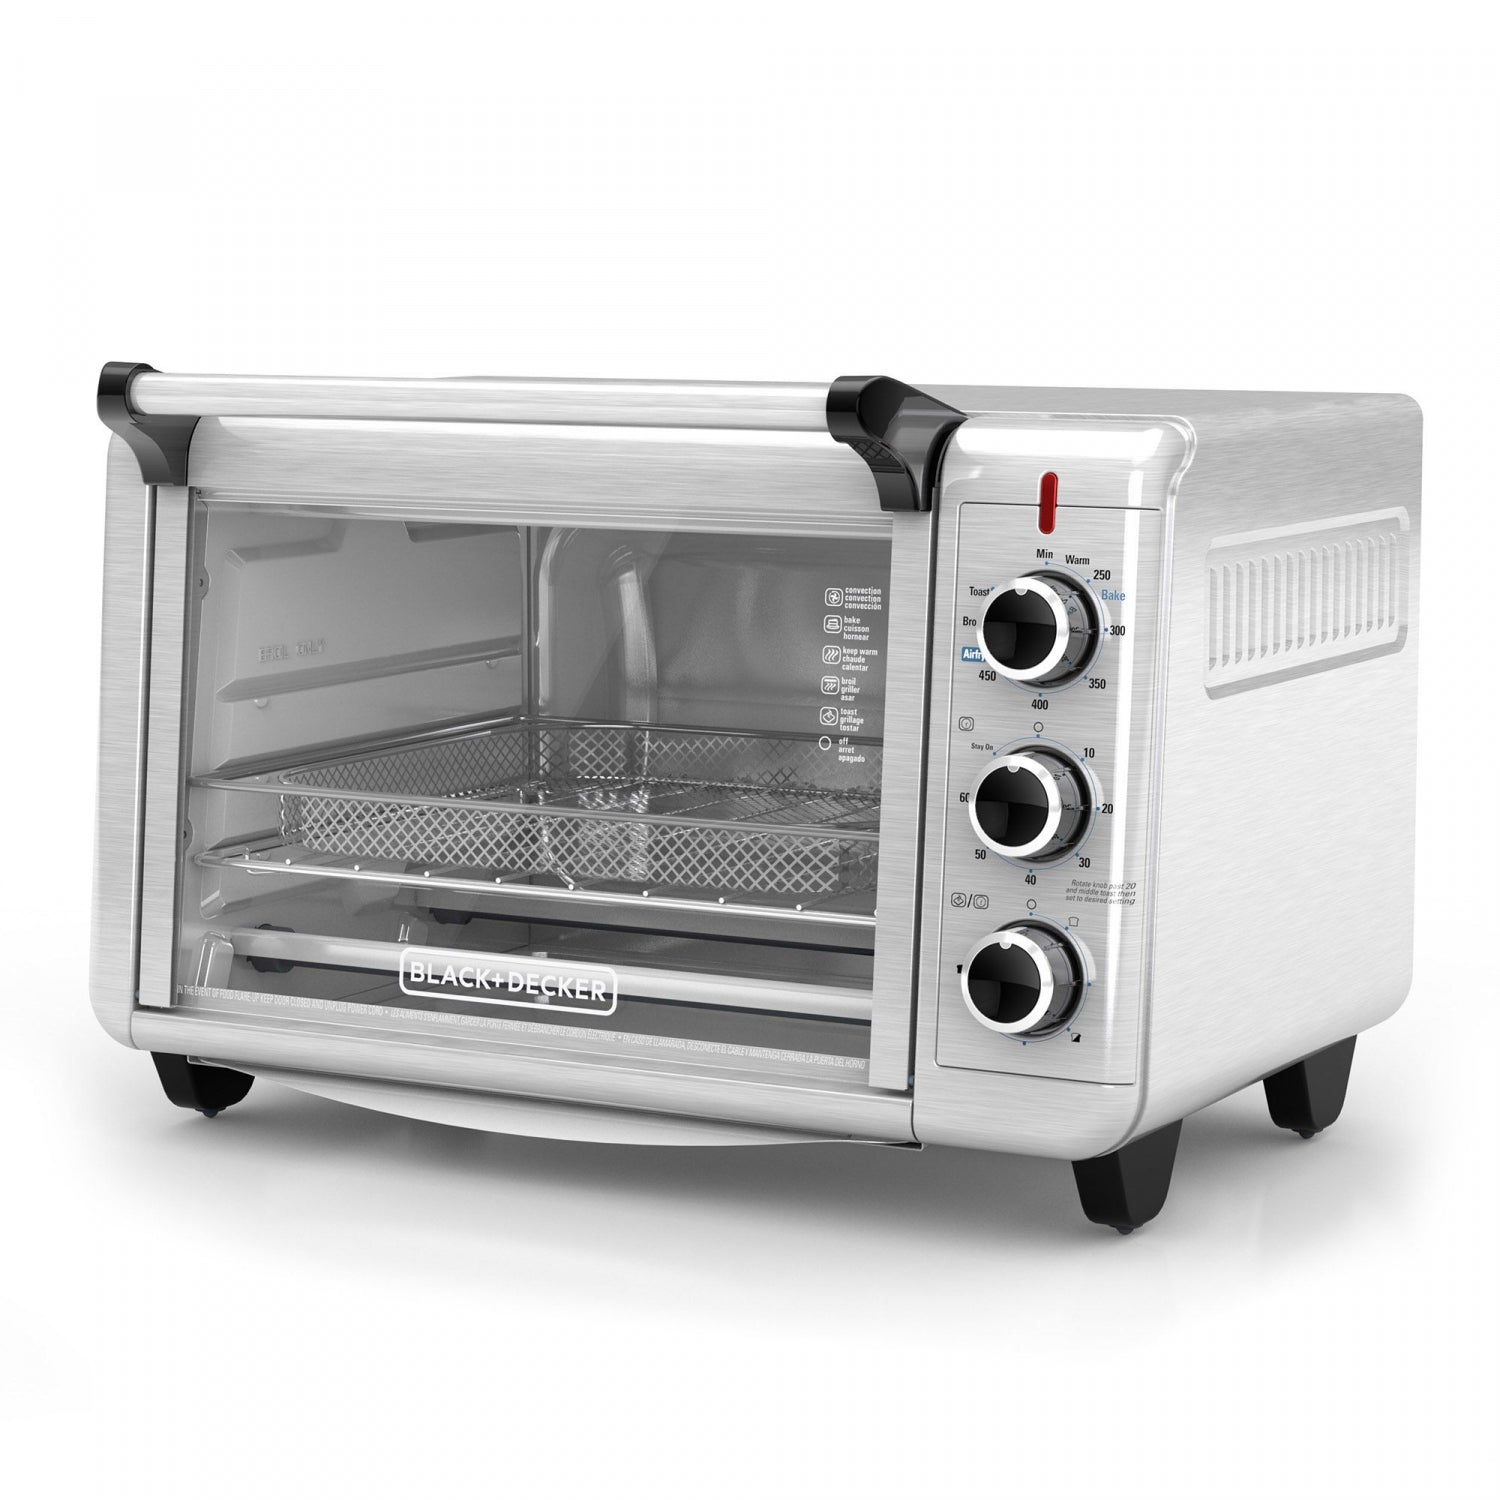 Rebate Form Black And Decker Crisp N Bake Toaster Oven